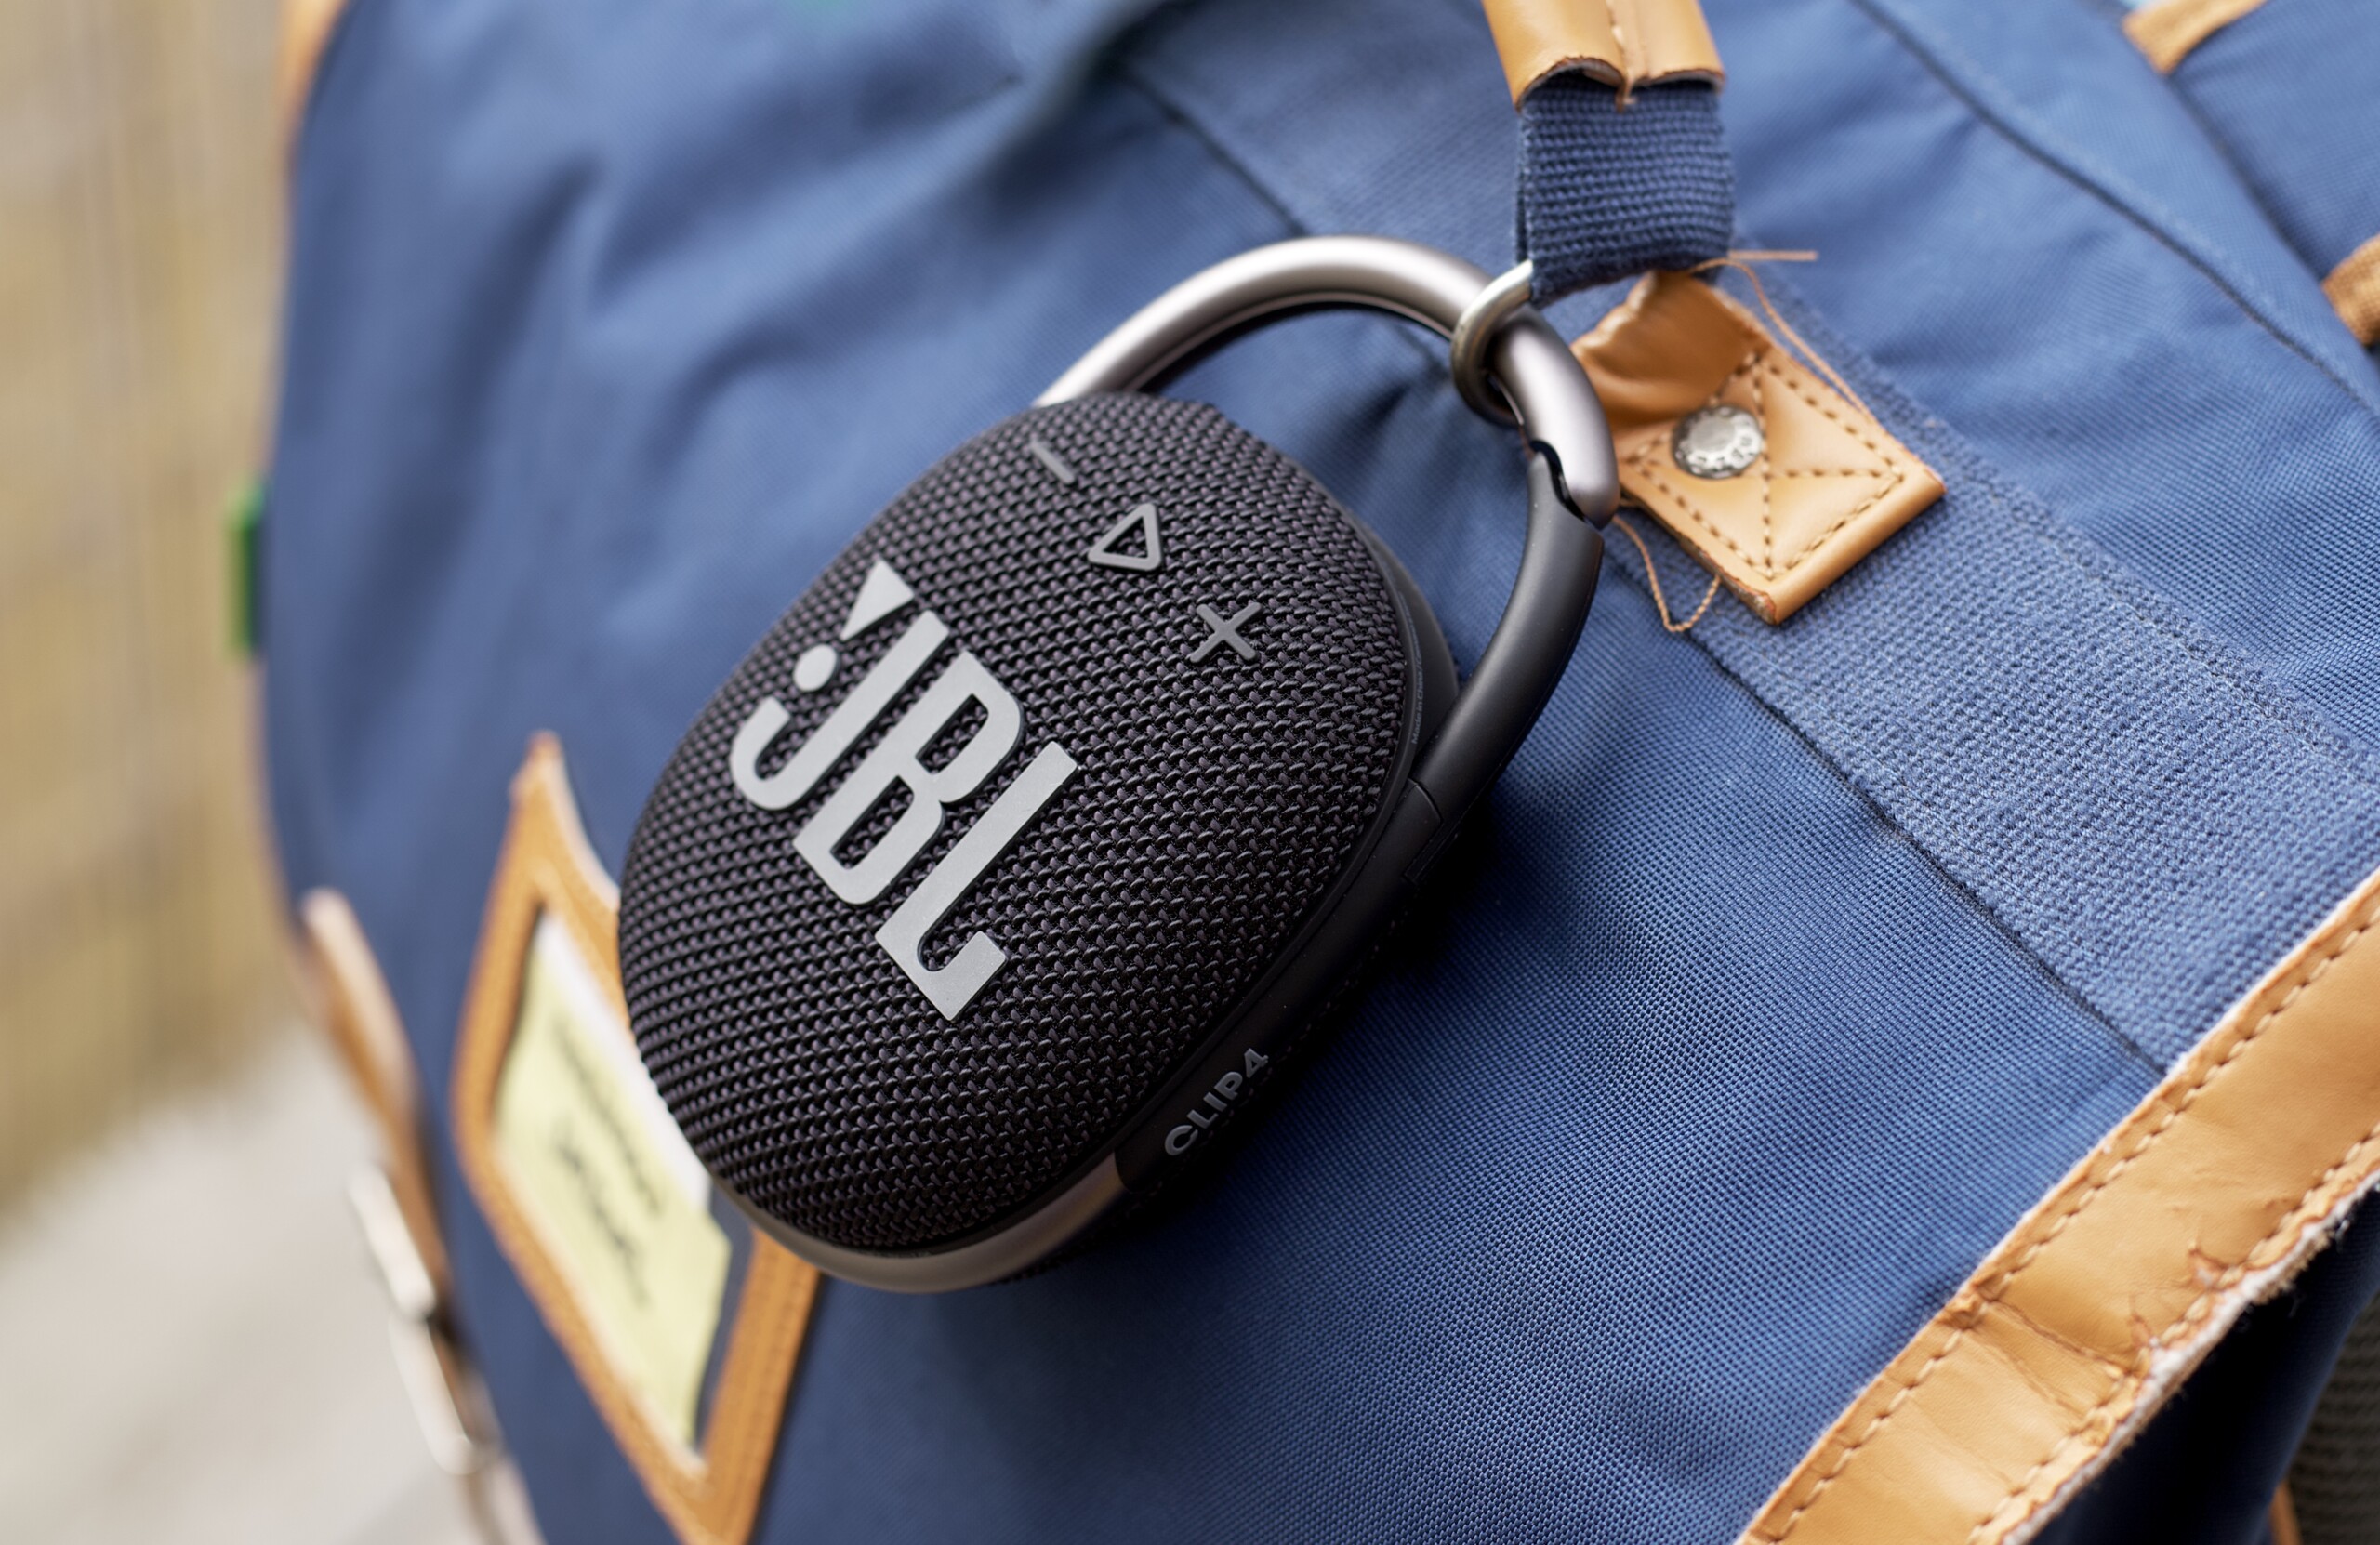 Enceinte JBL Clip 4 Eco bleue : prix, avis, caractéristiques - Orange